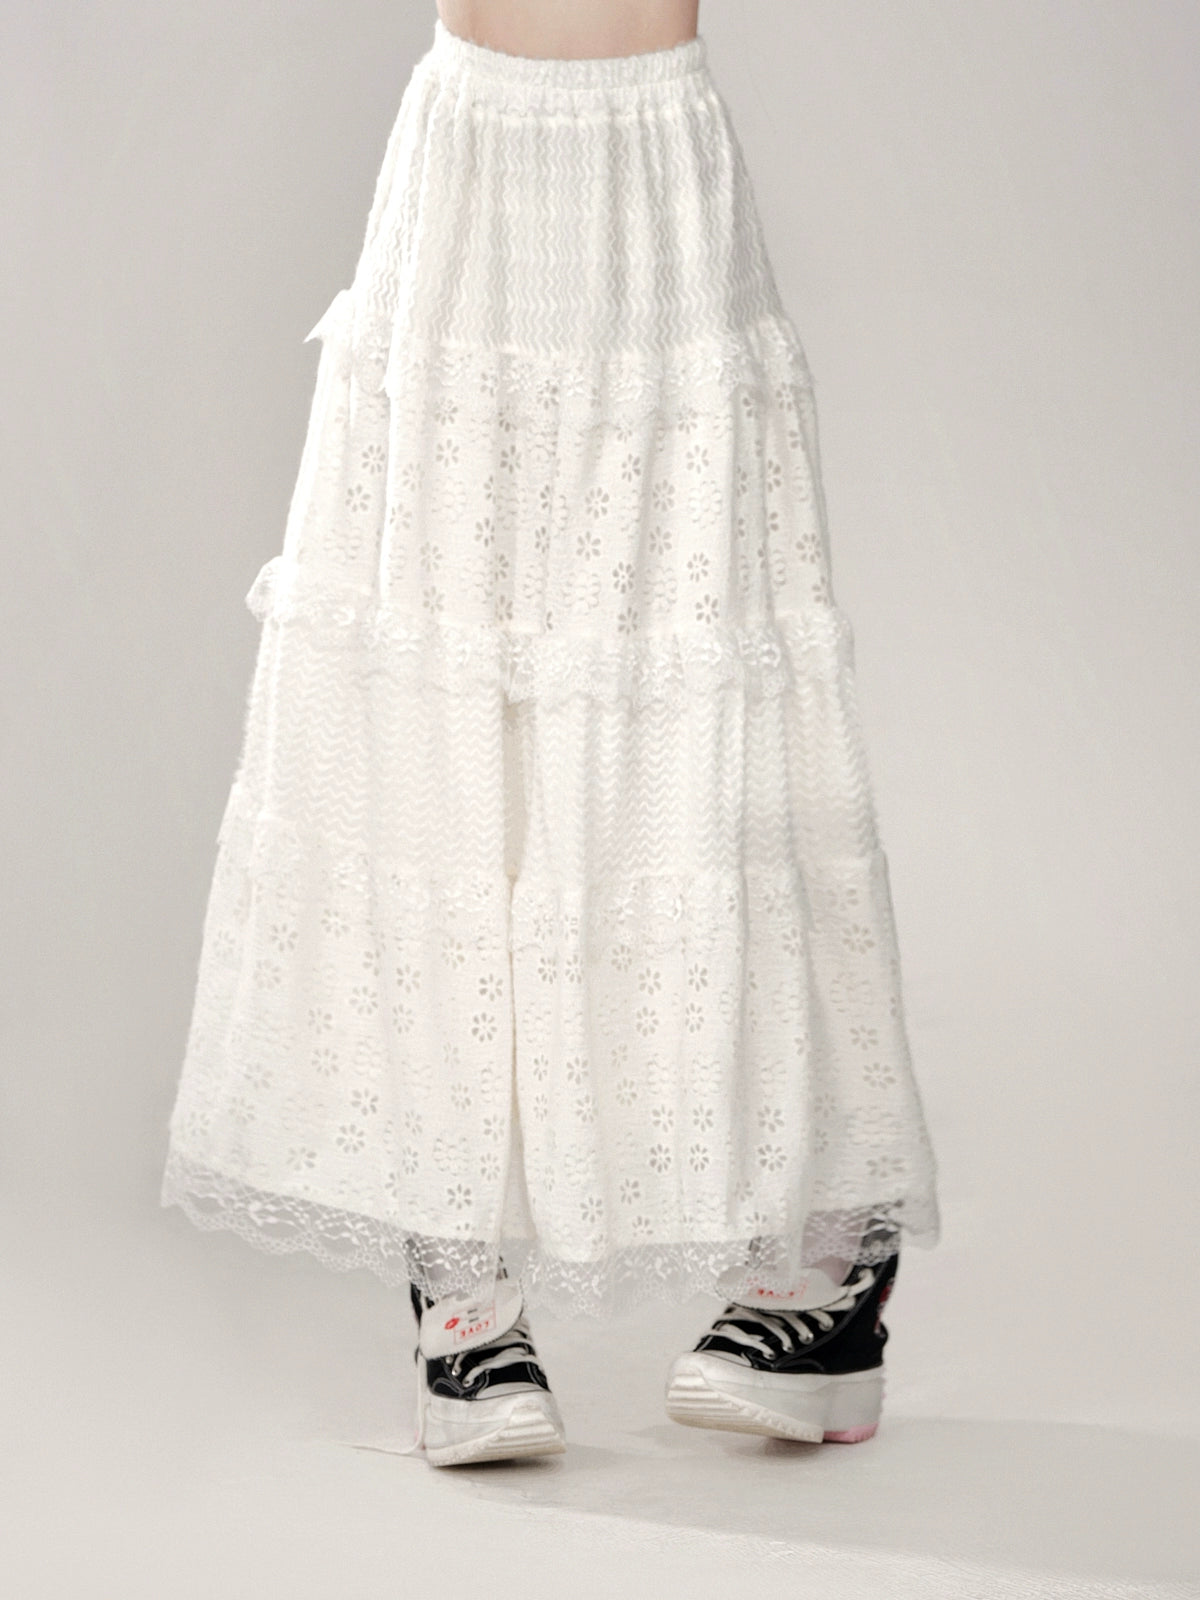 Sweet girly white long skirt